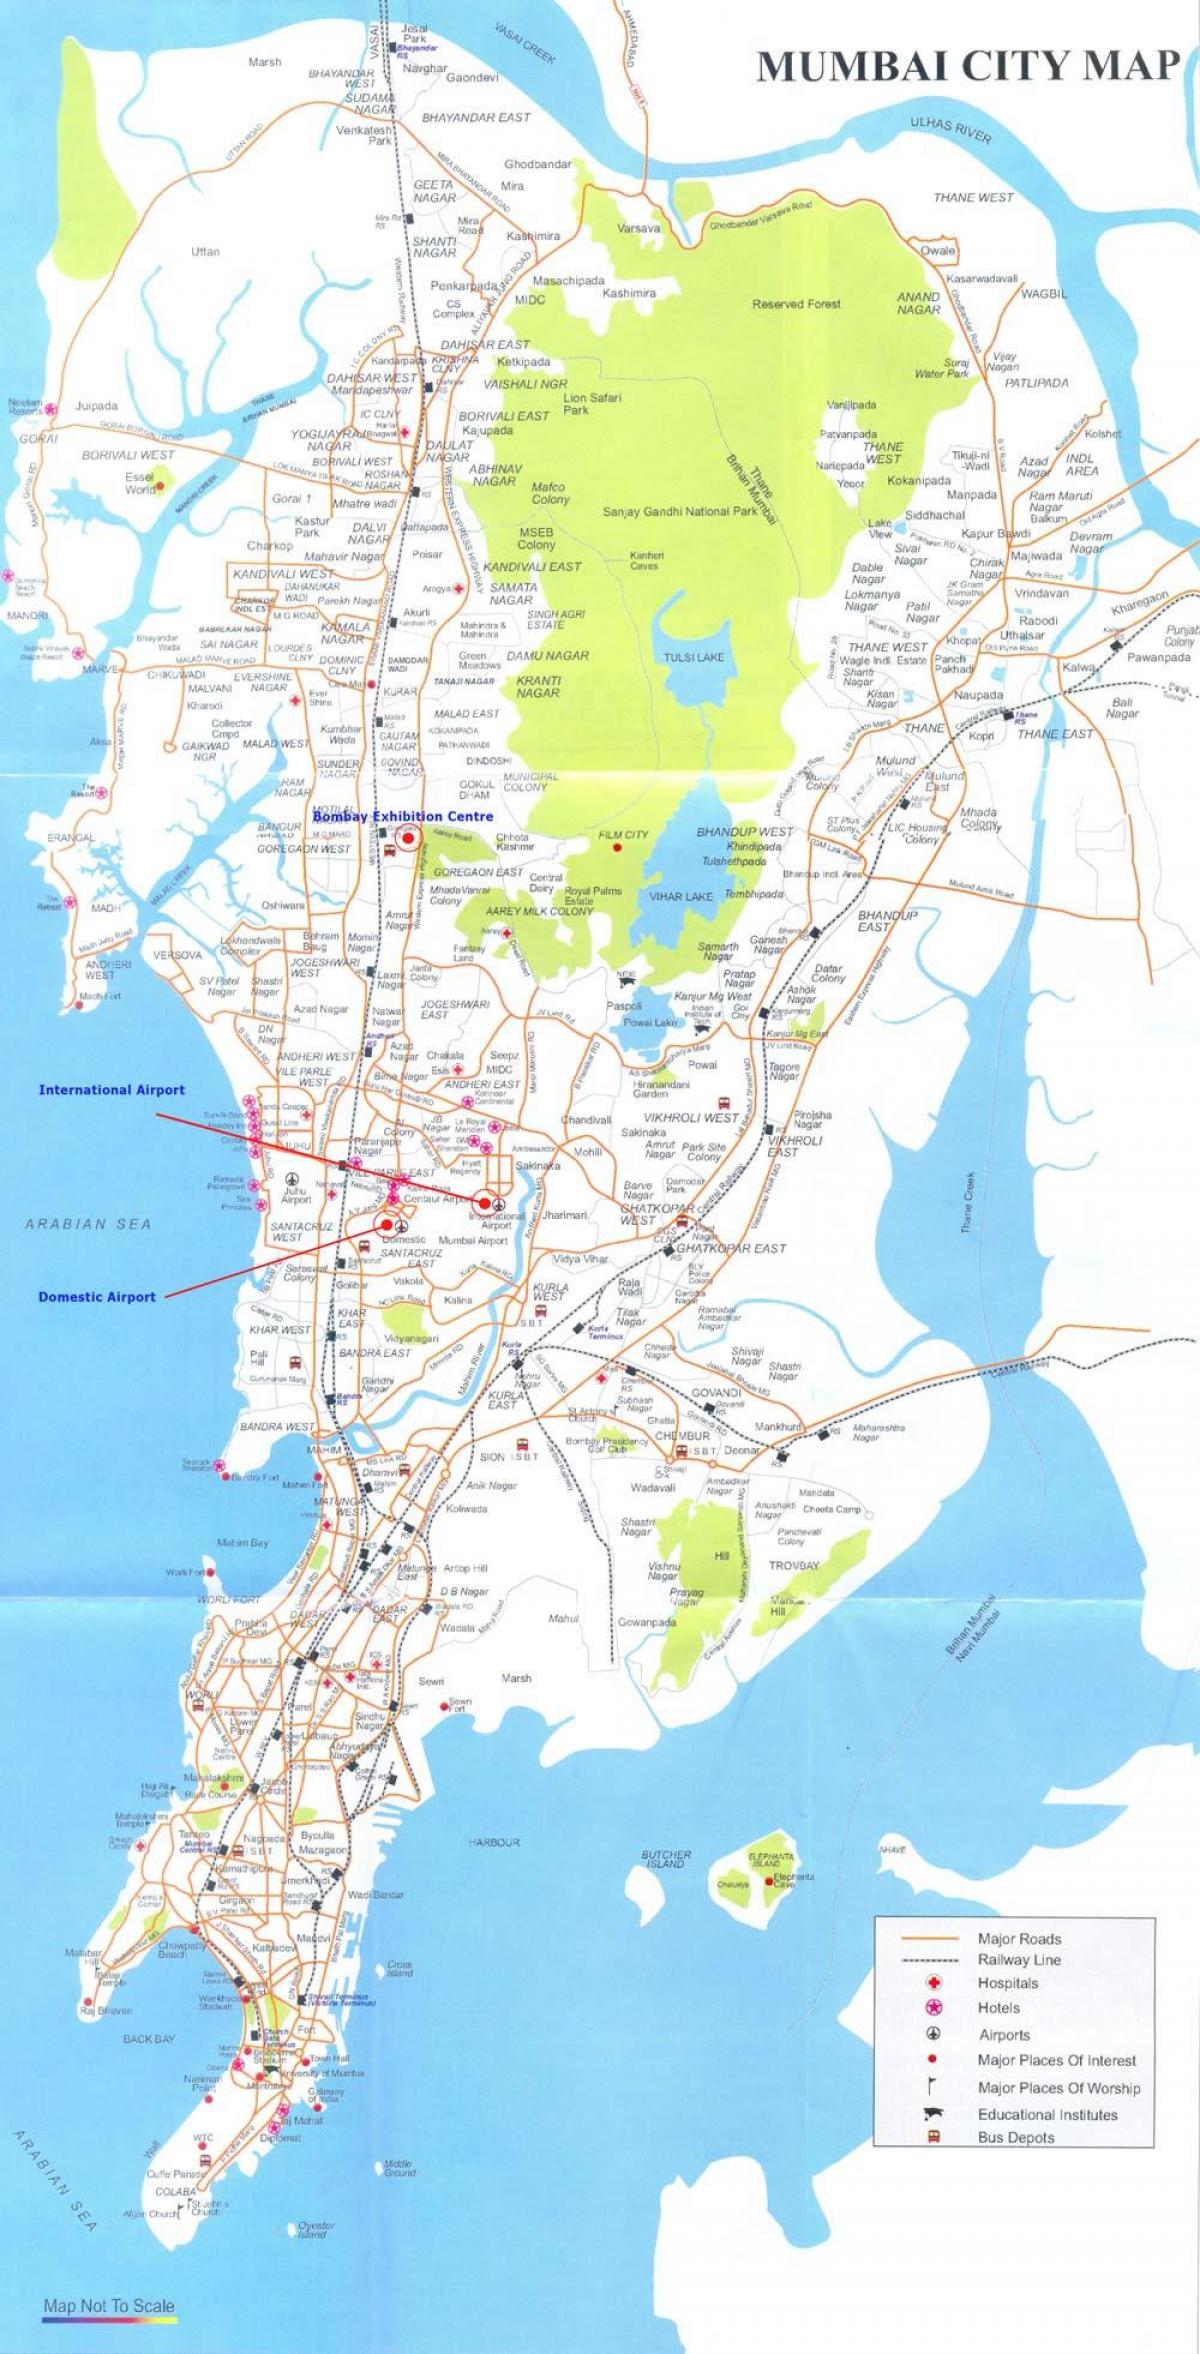 Mumbajus žemėlapyje